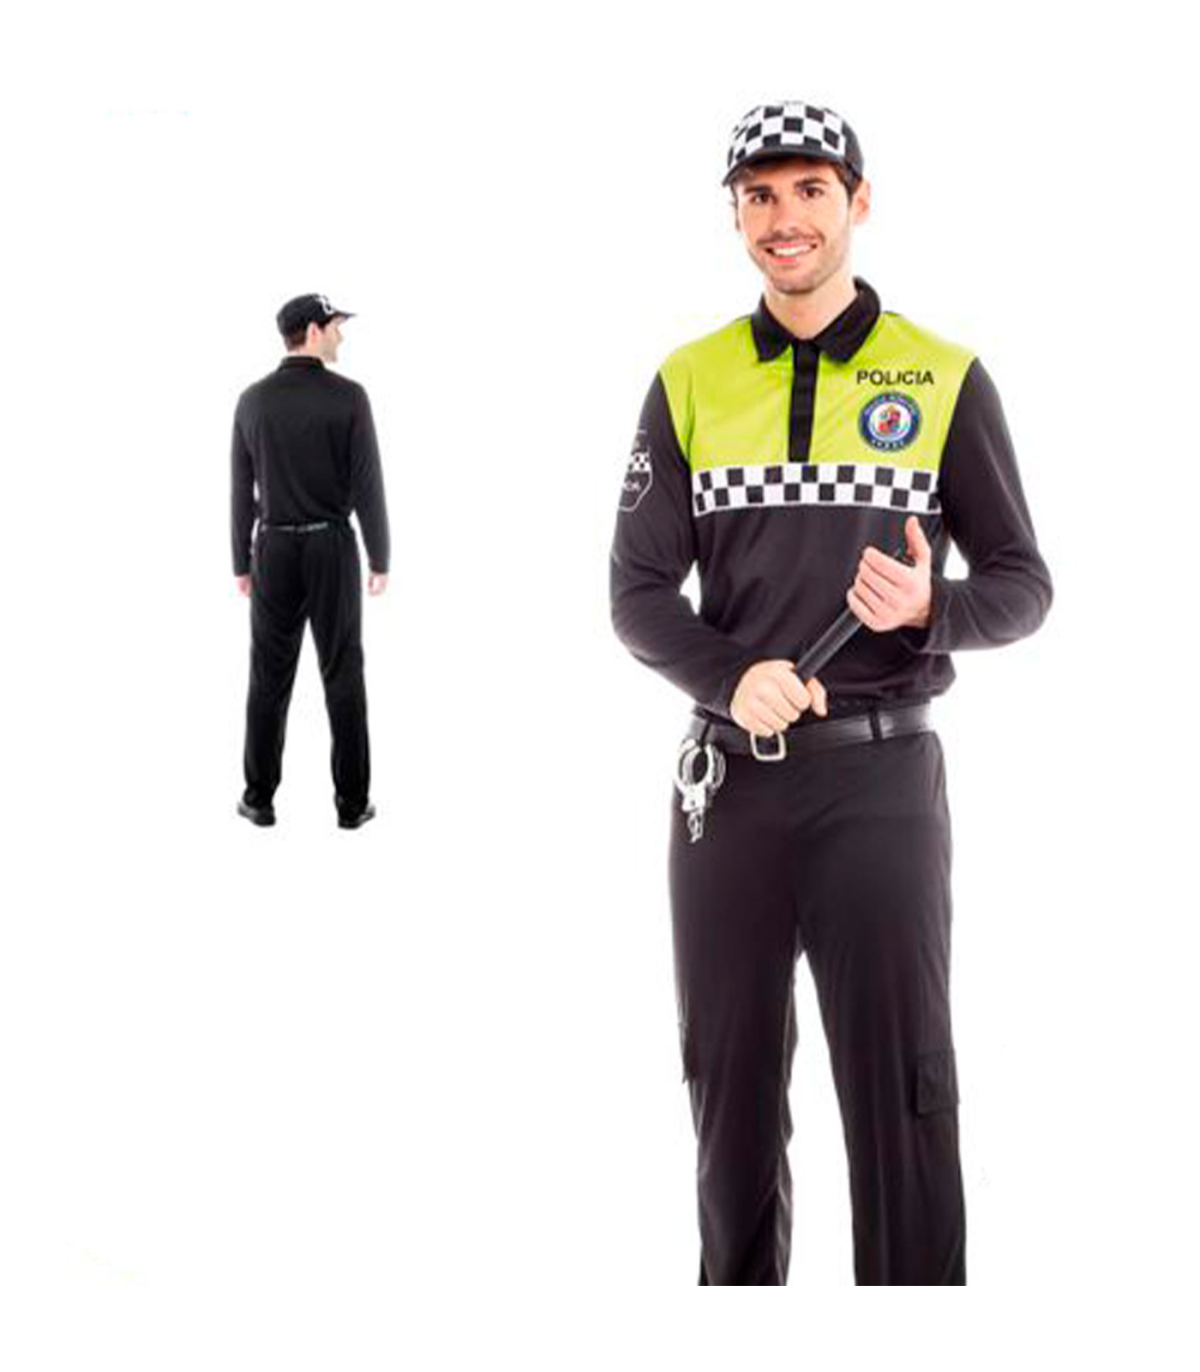 Tradineur - Disfraz policía adulto, agente policía local, fibra sintética,  incluye camiseta, pantalón, gorra y cinturón, carnava